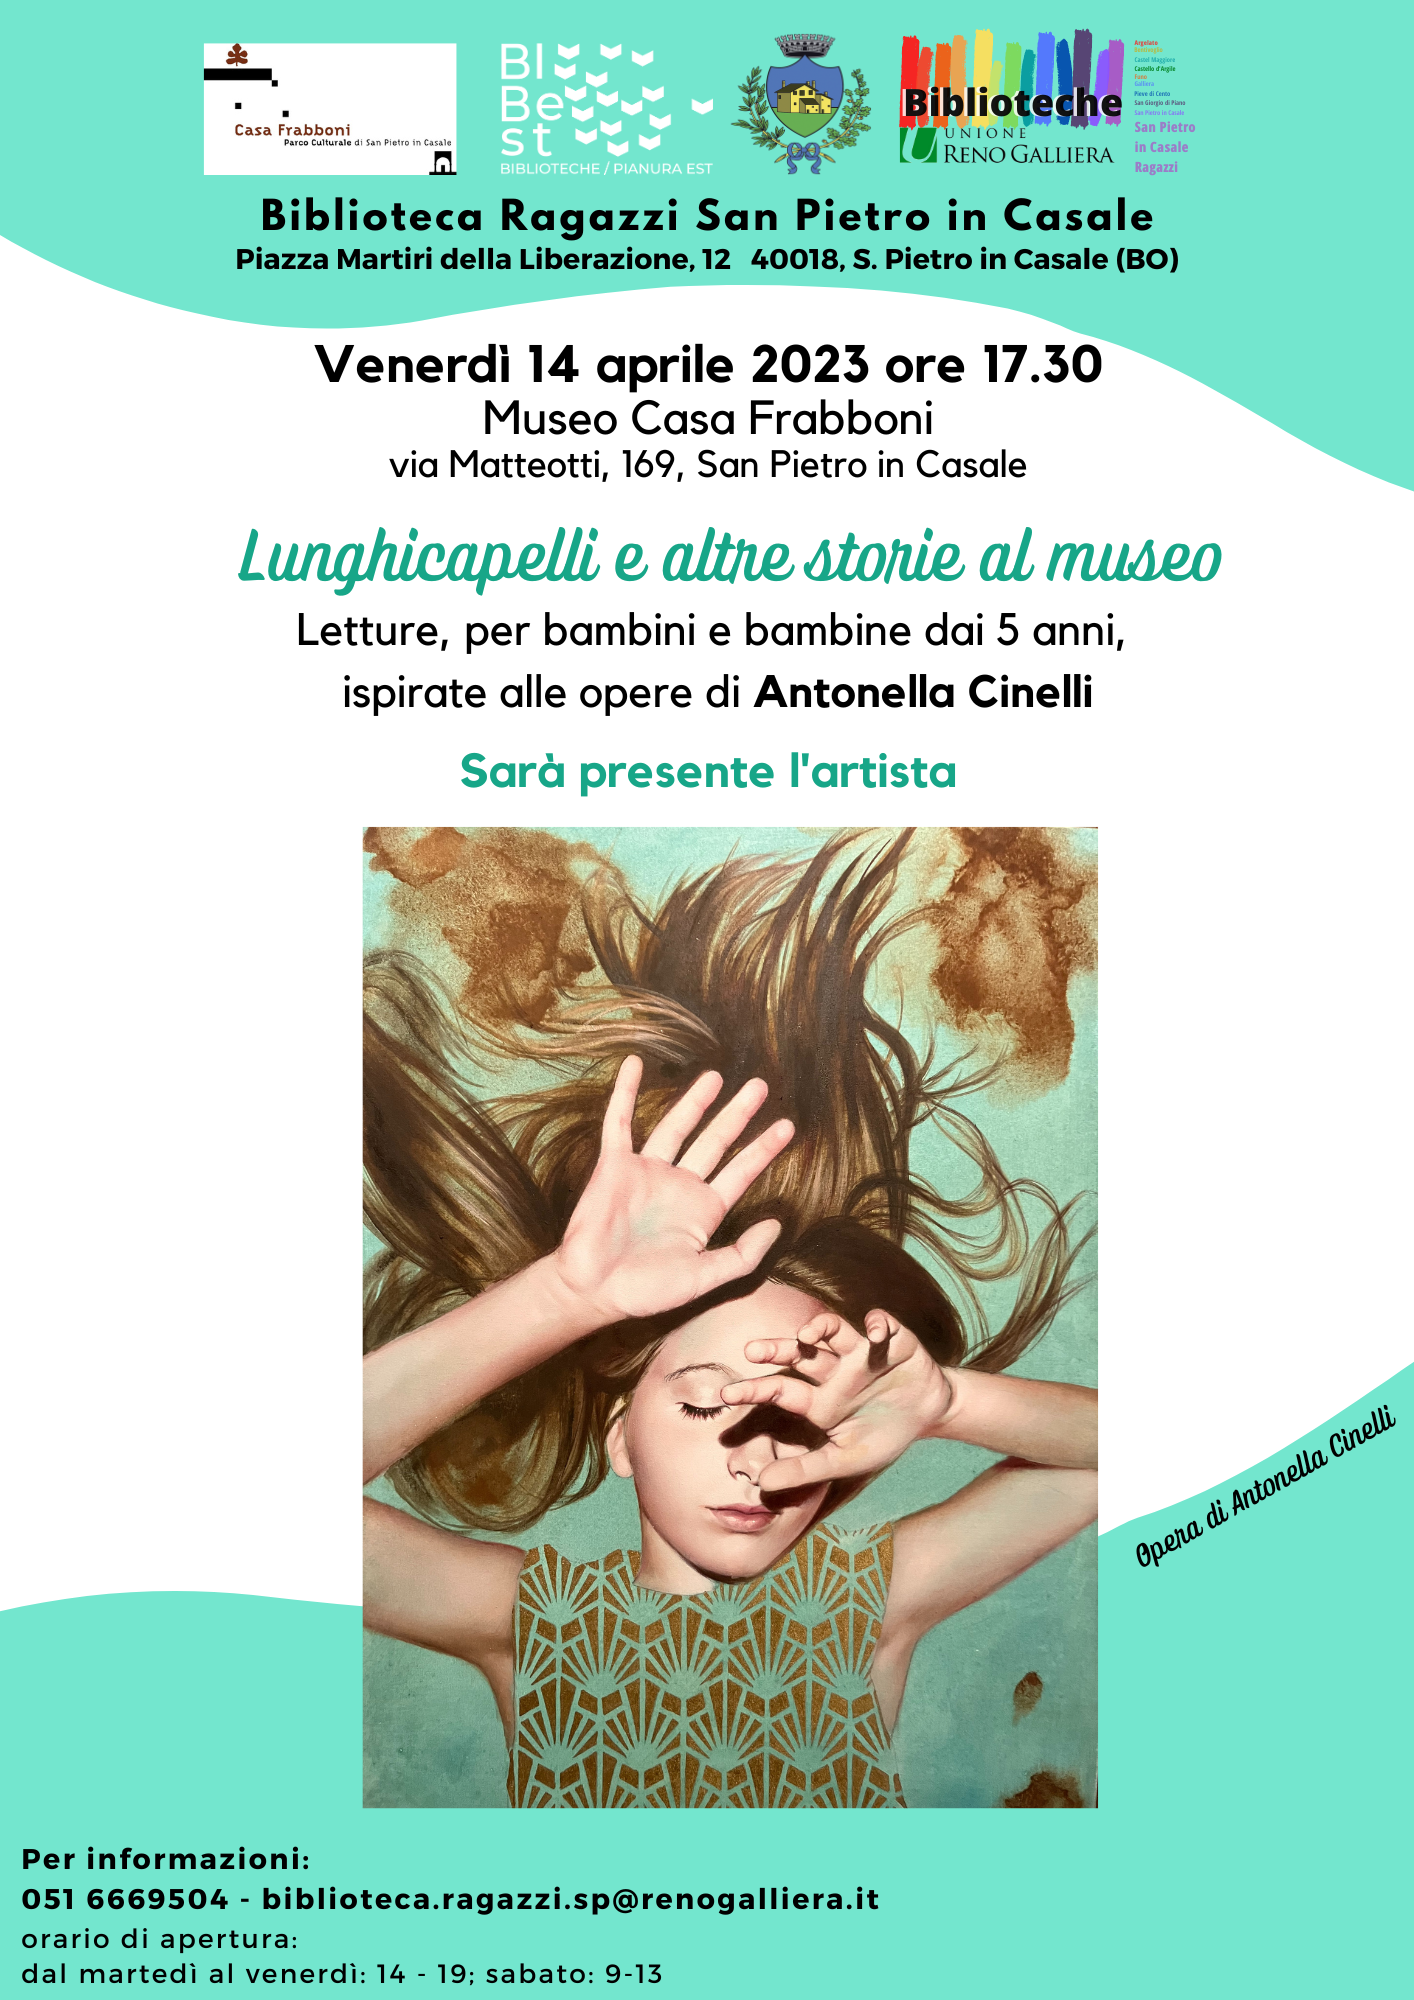 Evento 14 aprile 2023 Museo Frabboni